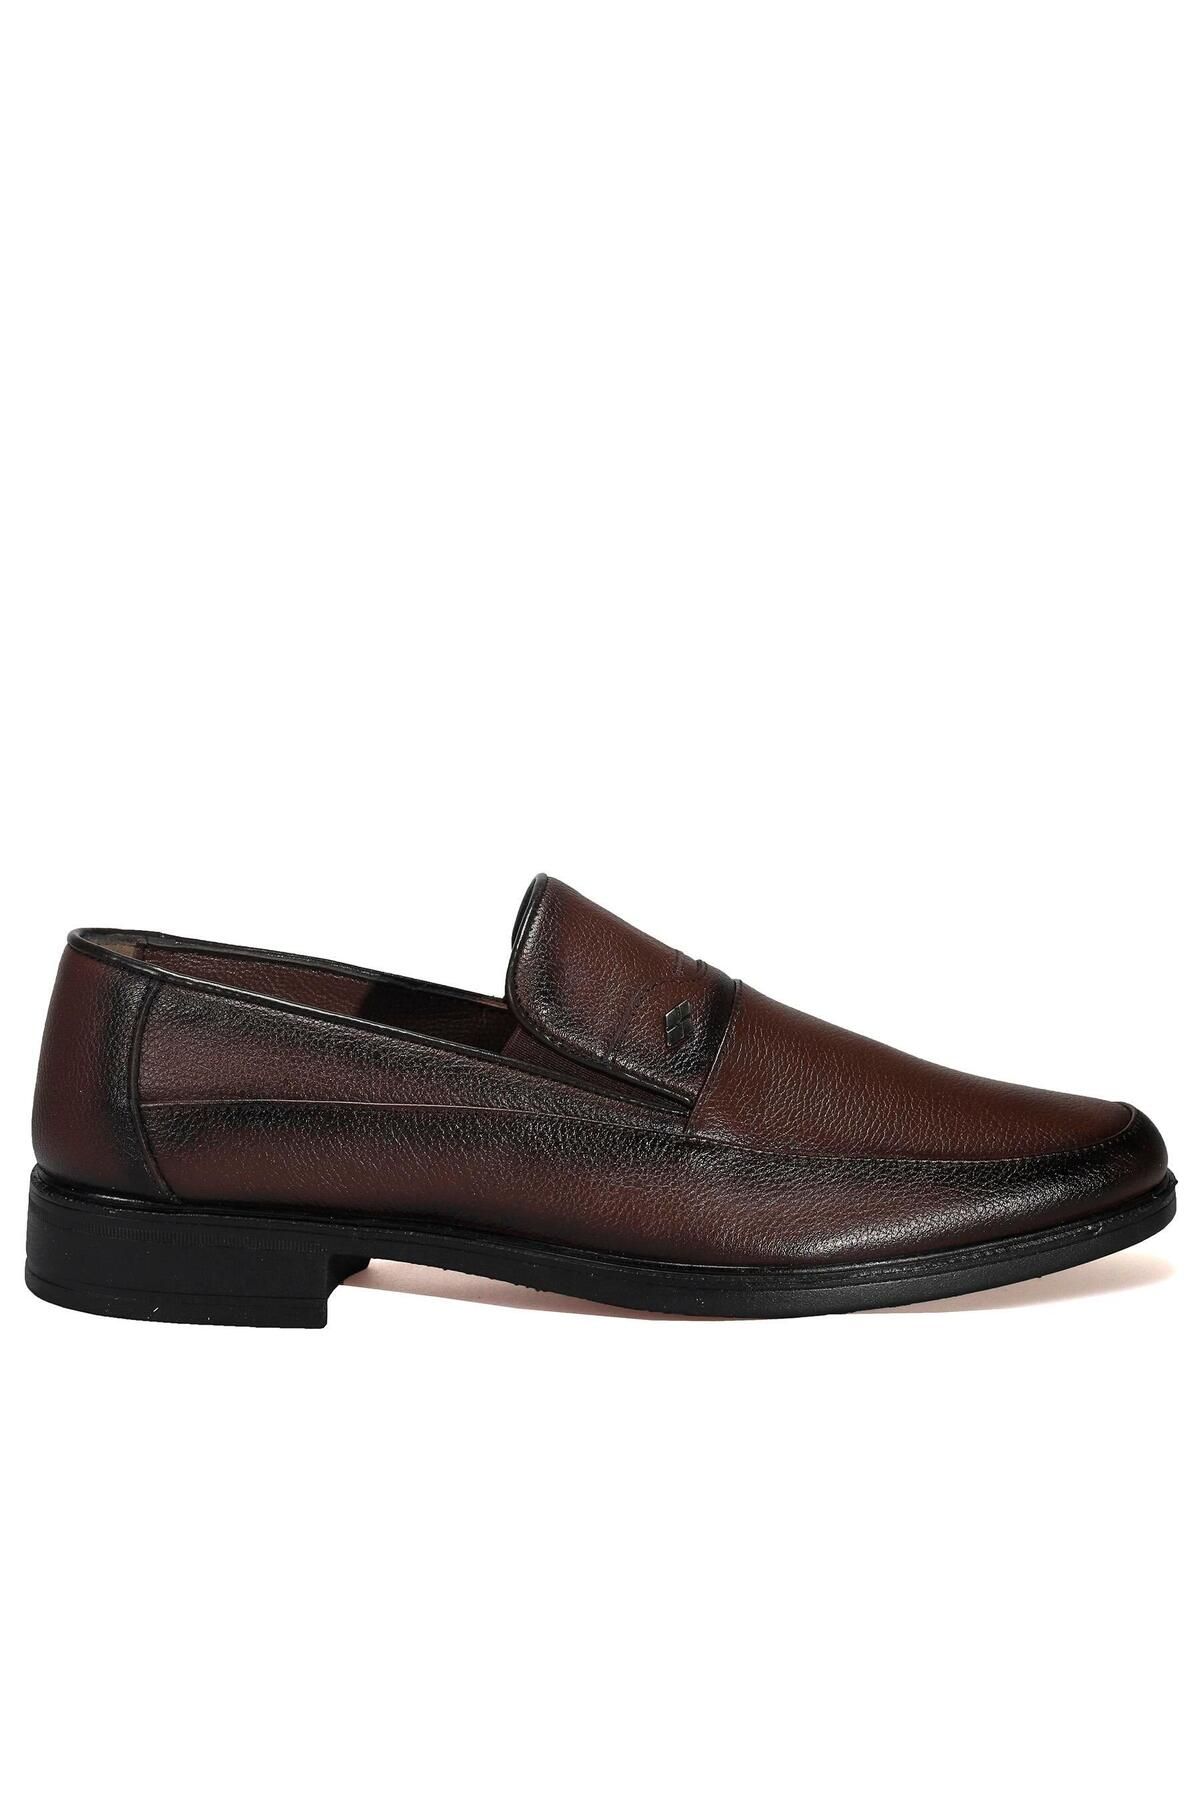 AREGA Bağcıksız Kahverengi Klasik Erkek Deri Ayakkabı